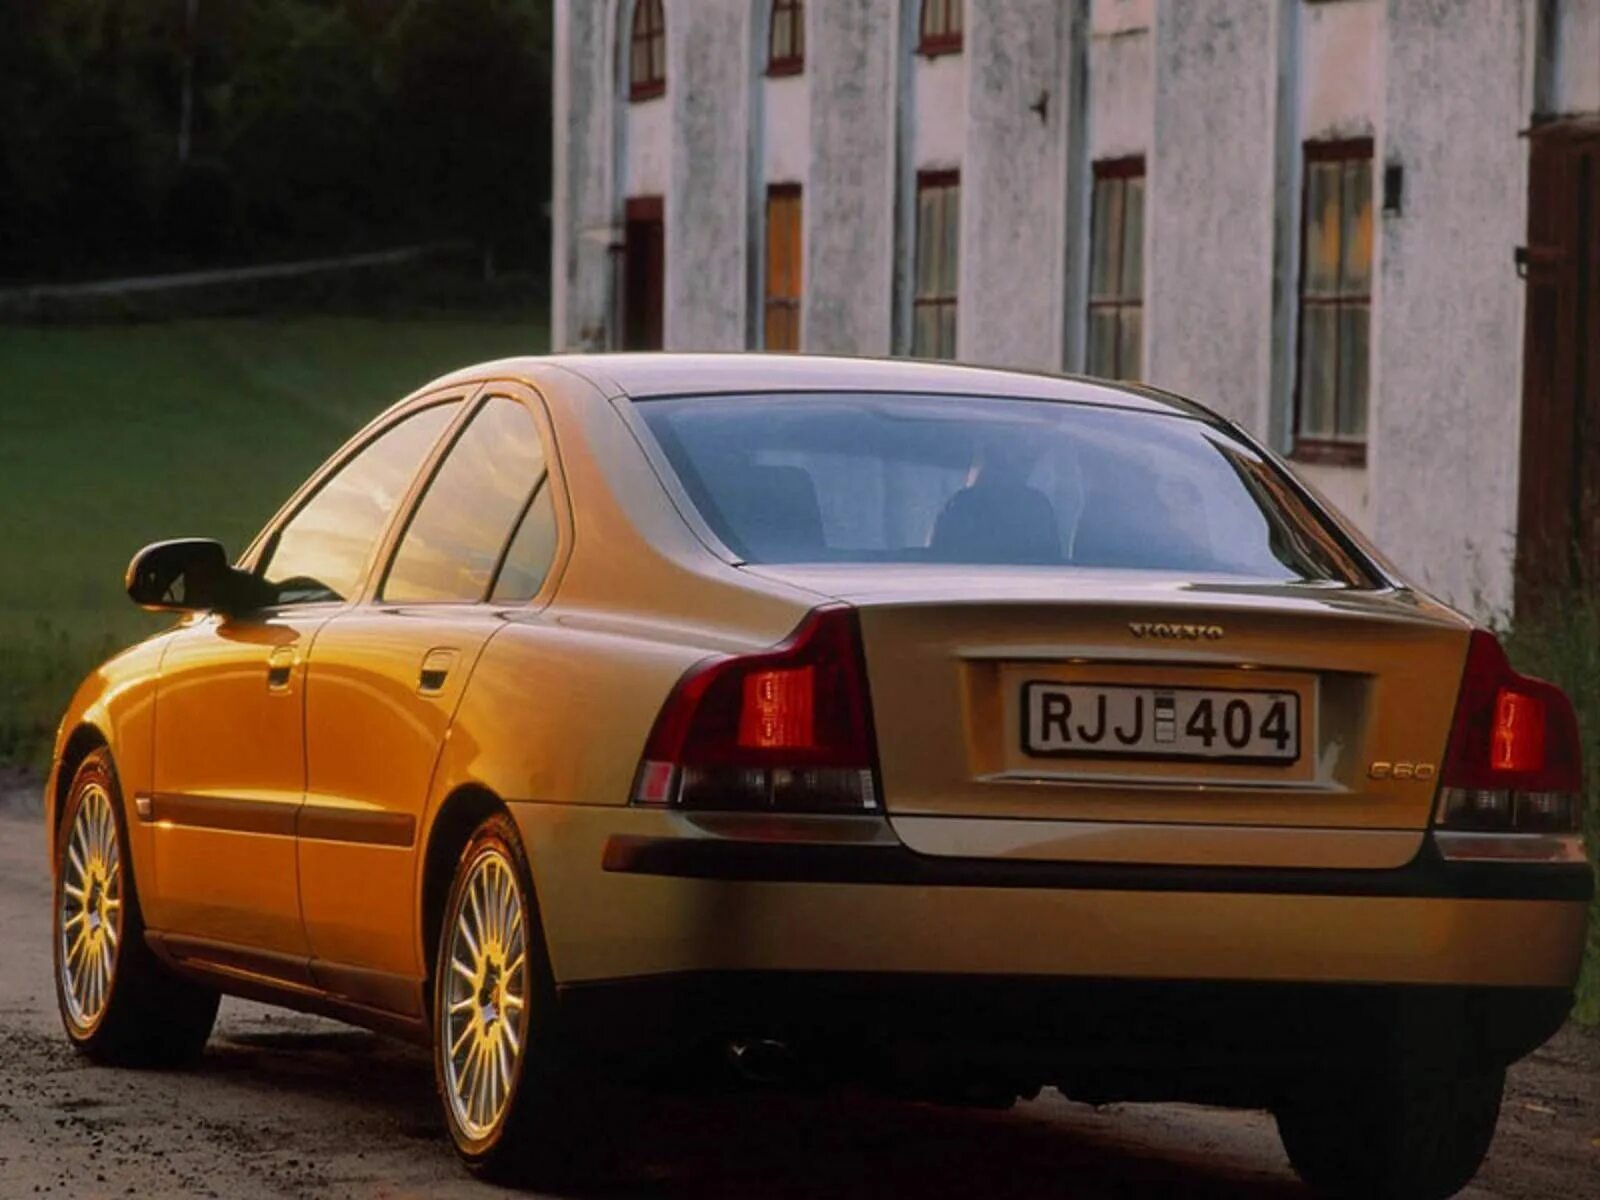 Volvo s60 2000. Volvo s60 i 2000 - 2004. Вольво s60 2001.